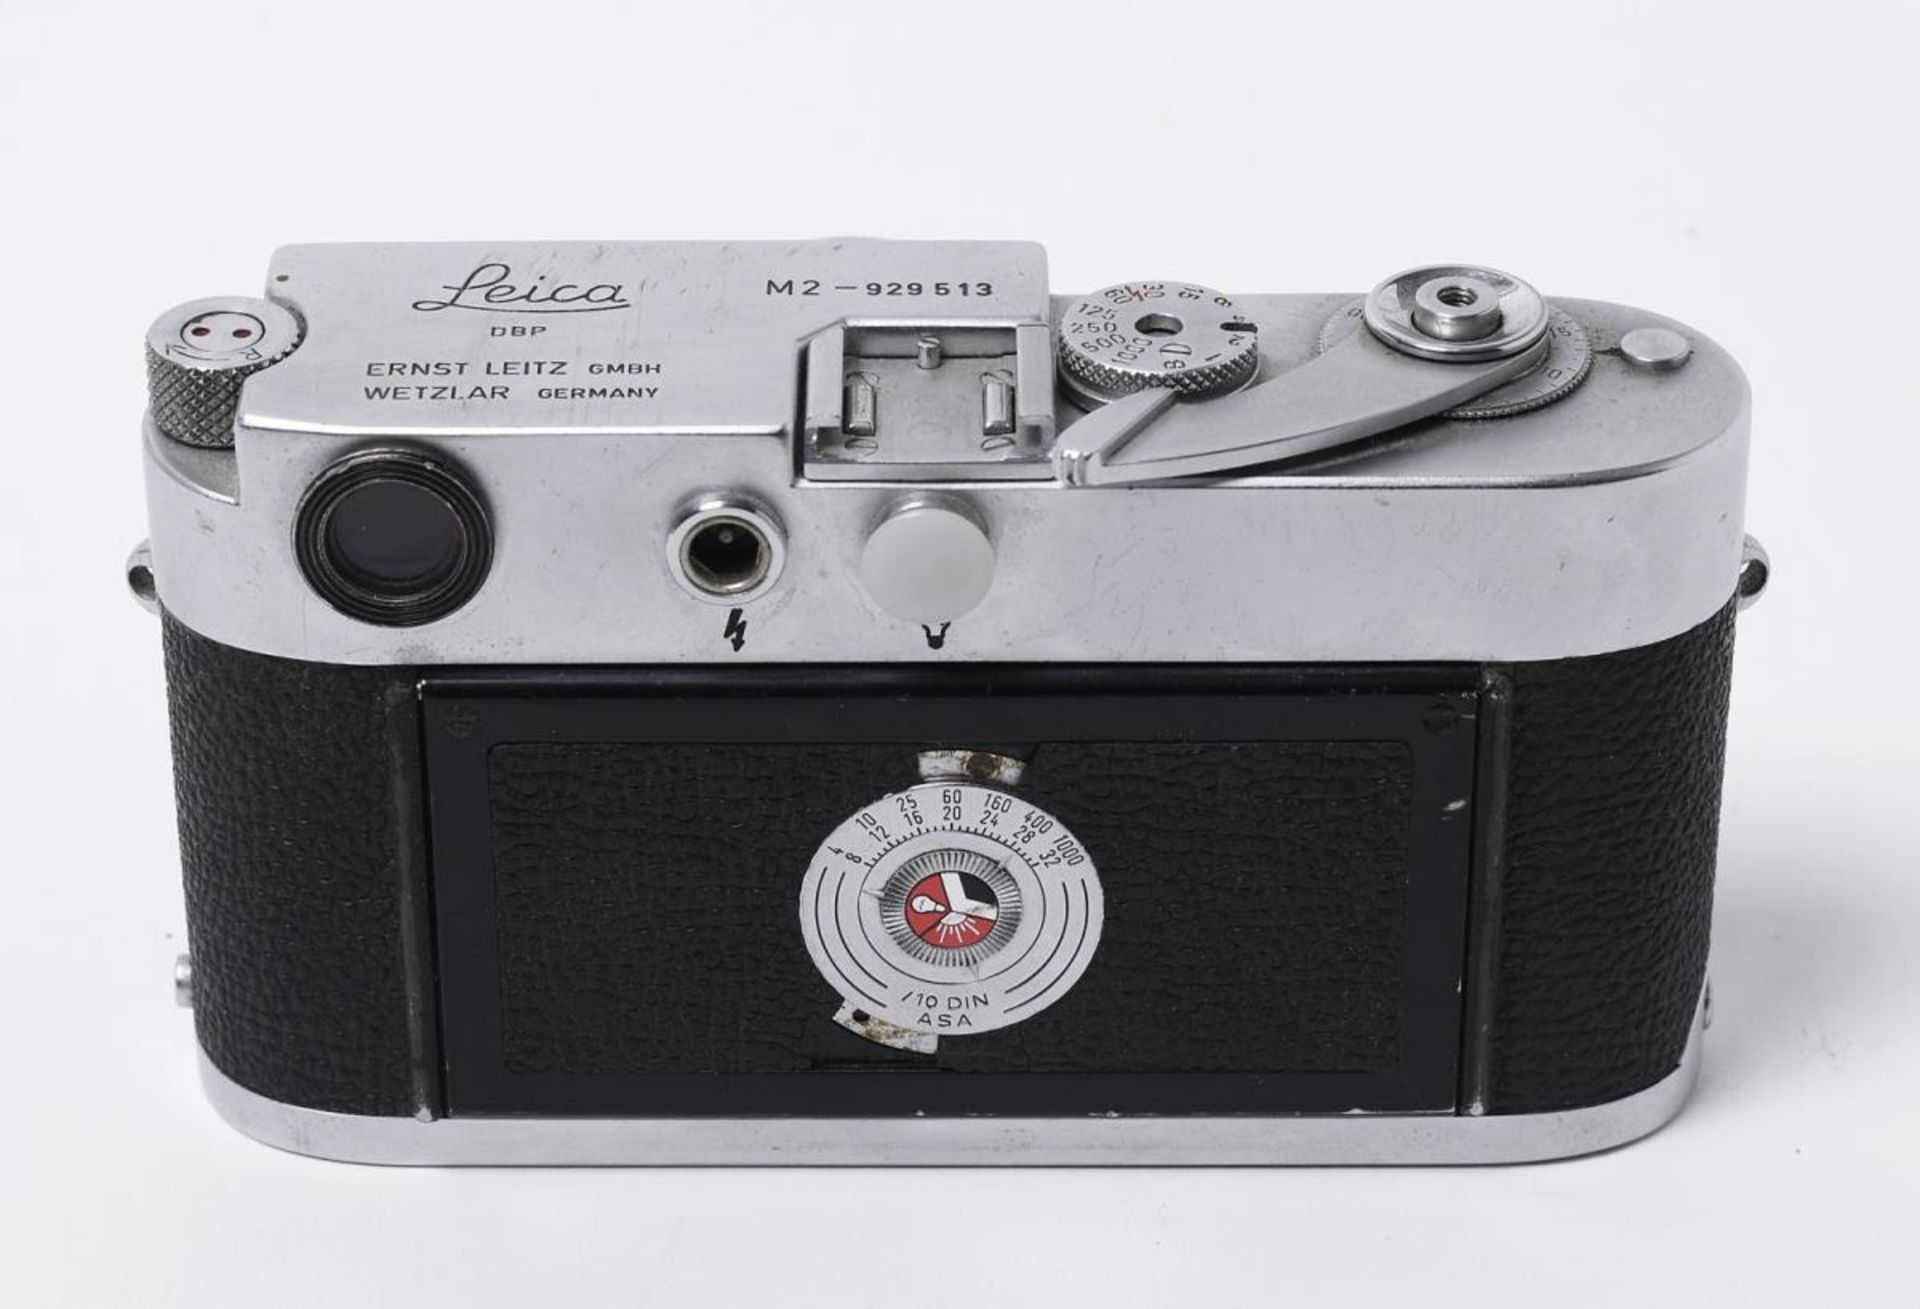 Leica M2 mit Summicron 1:2/50mm. Ernst Leitz GmbH, Wetzlar, 1958-1968, Leica M2 | - Image 2 of 2